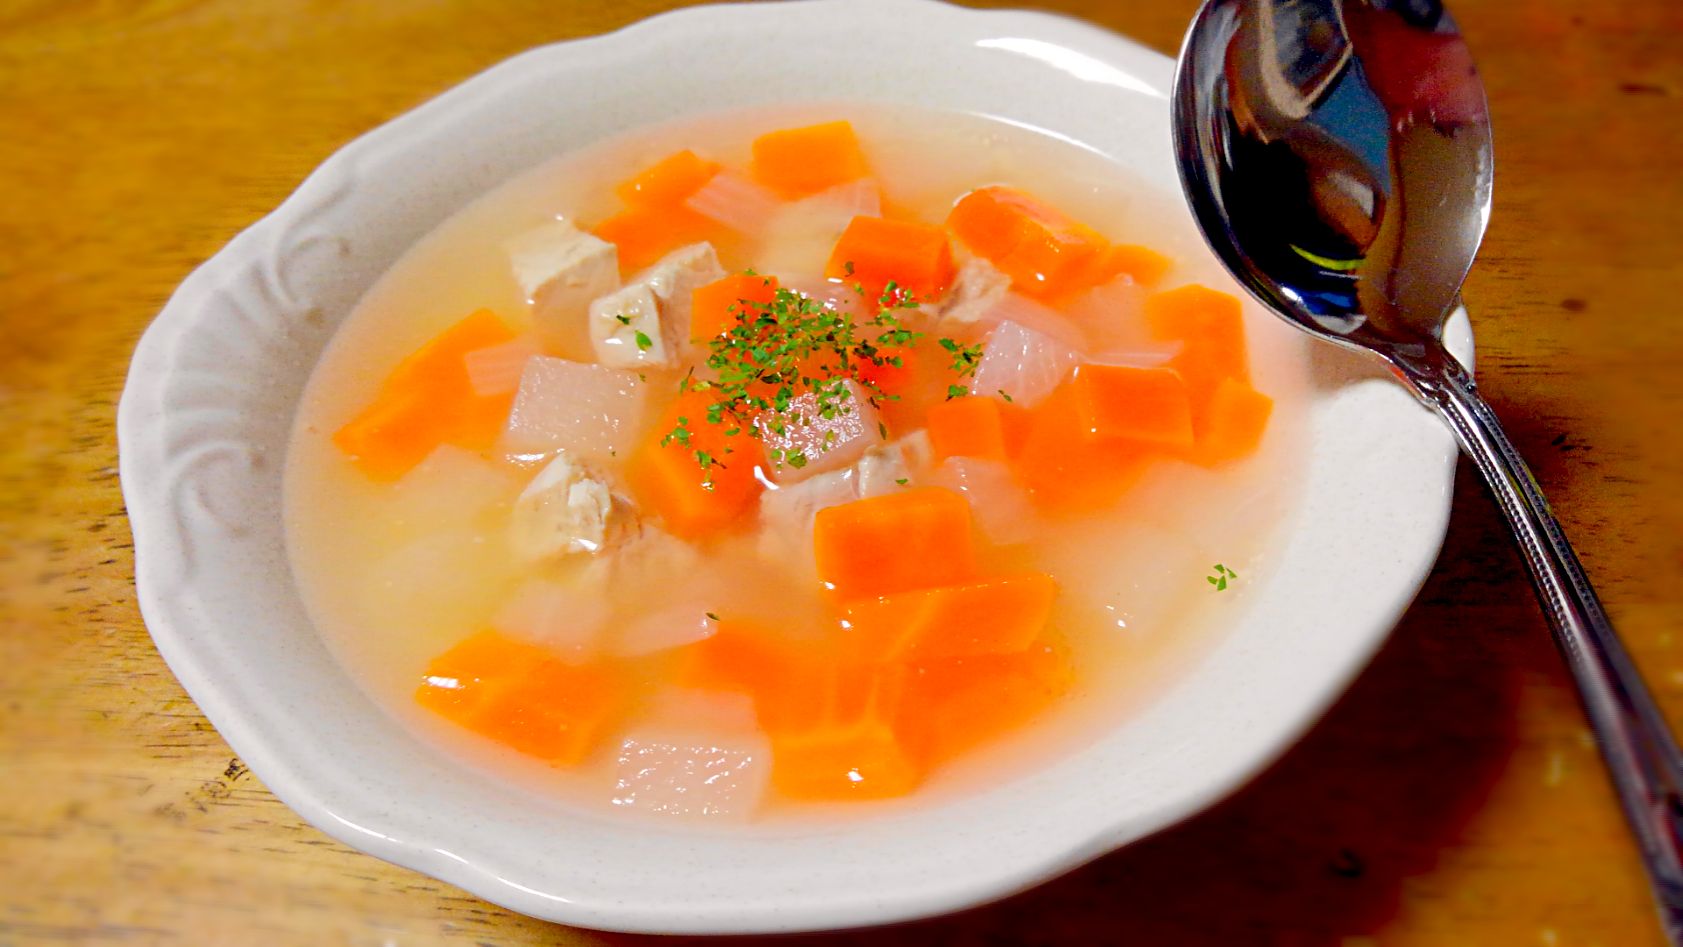 コンソメと鰹だし汁で
鶏胸肉野菜生姜スープ